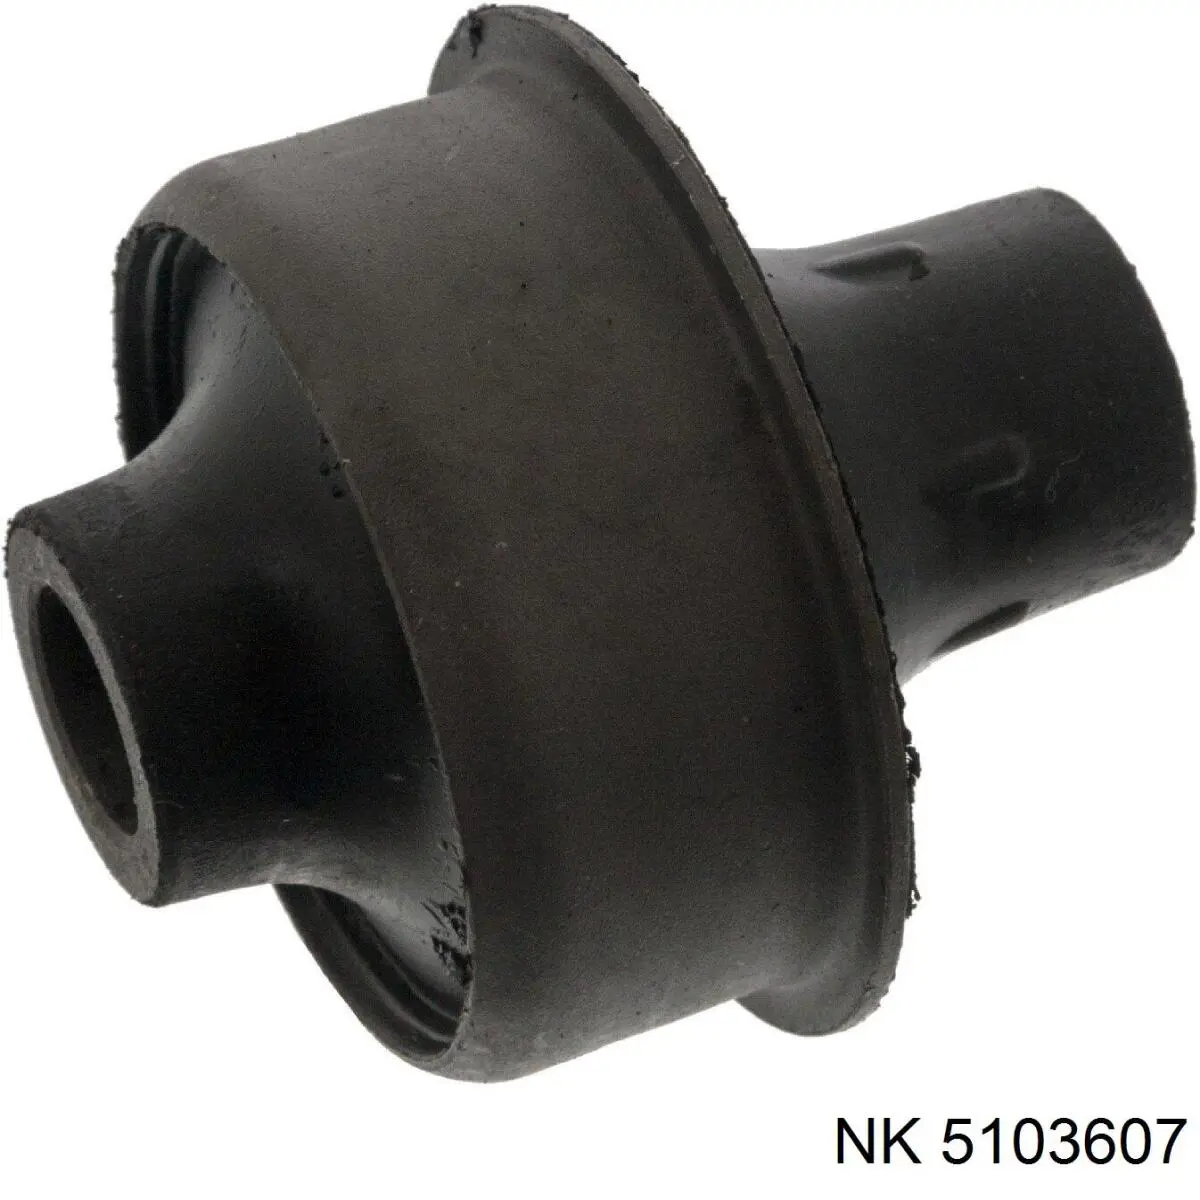 5103607 NK silentblock de suspensión delantero inferior